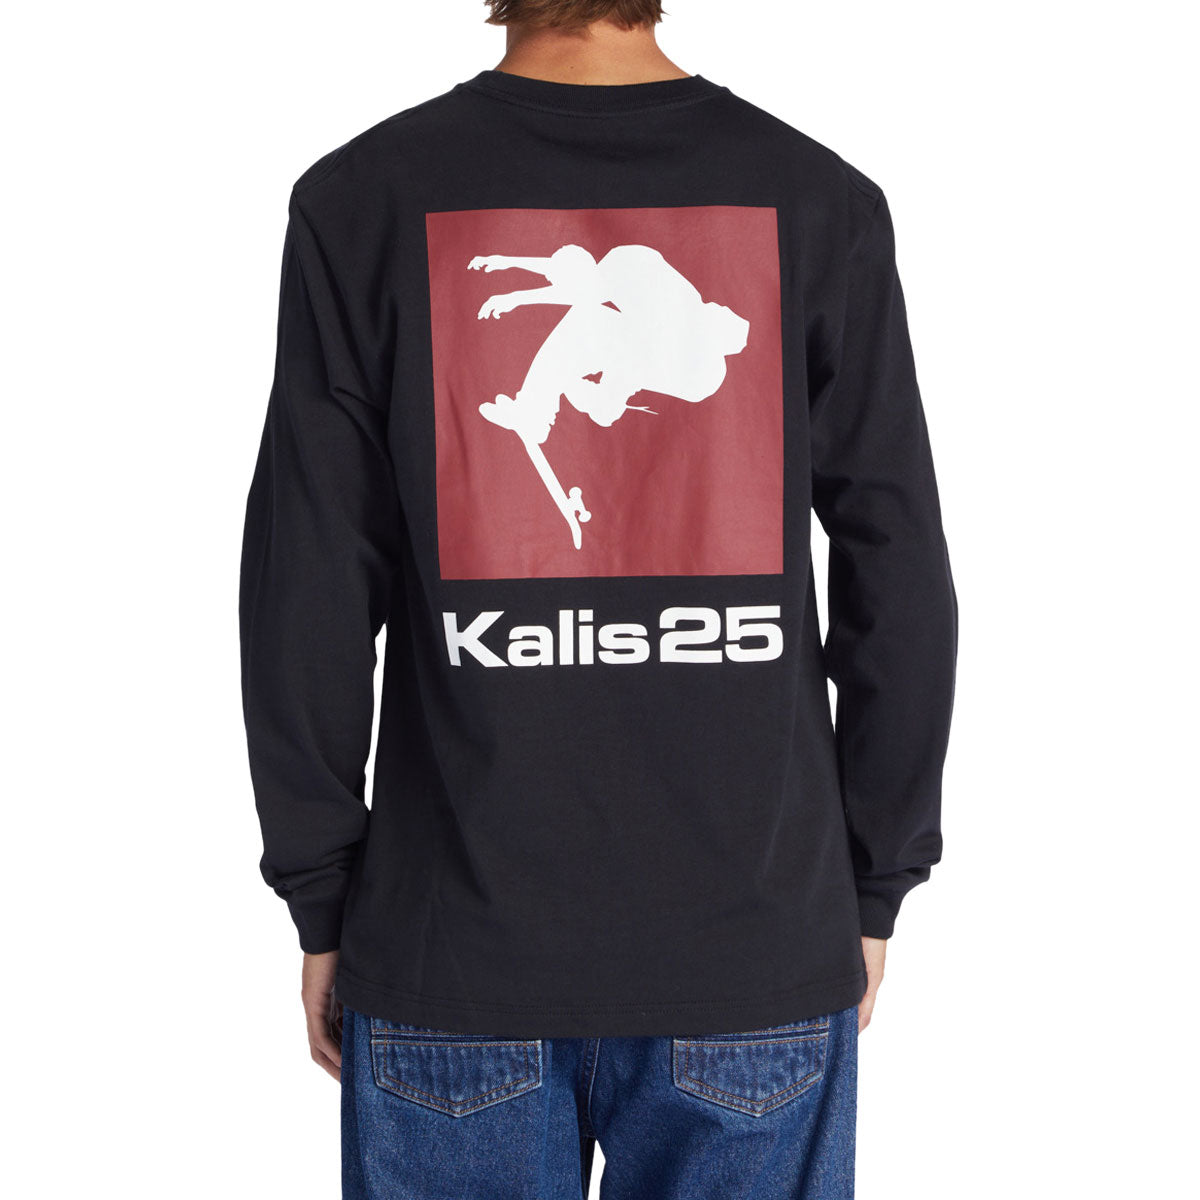 DC Kalis 25 Long Sleeve T-Shirt - Black image 1